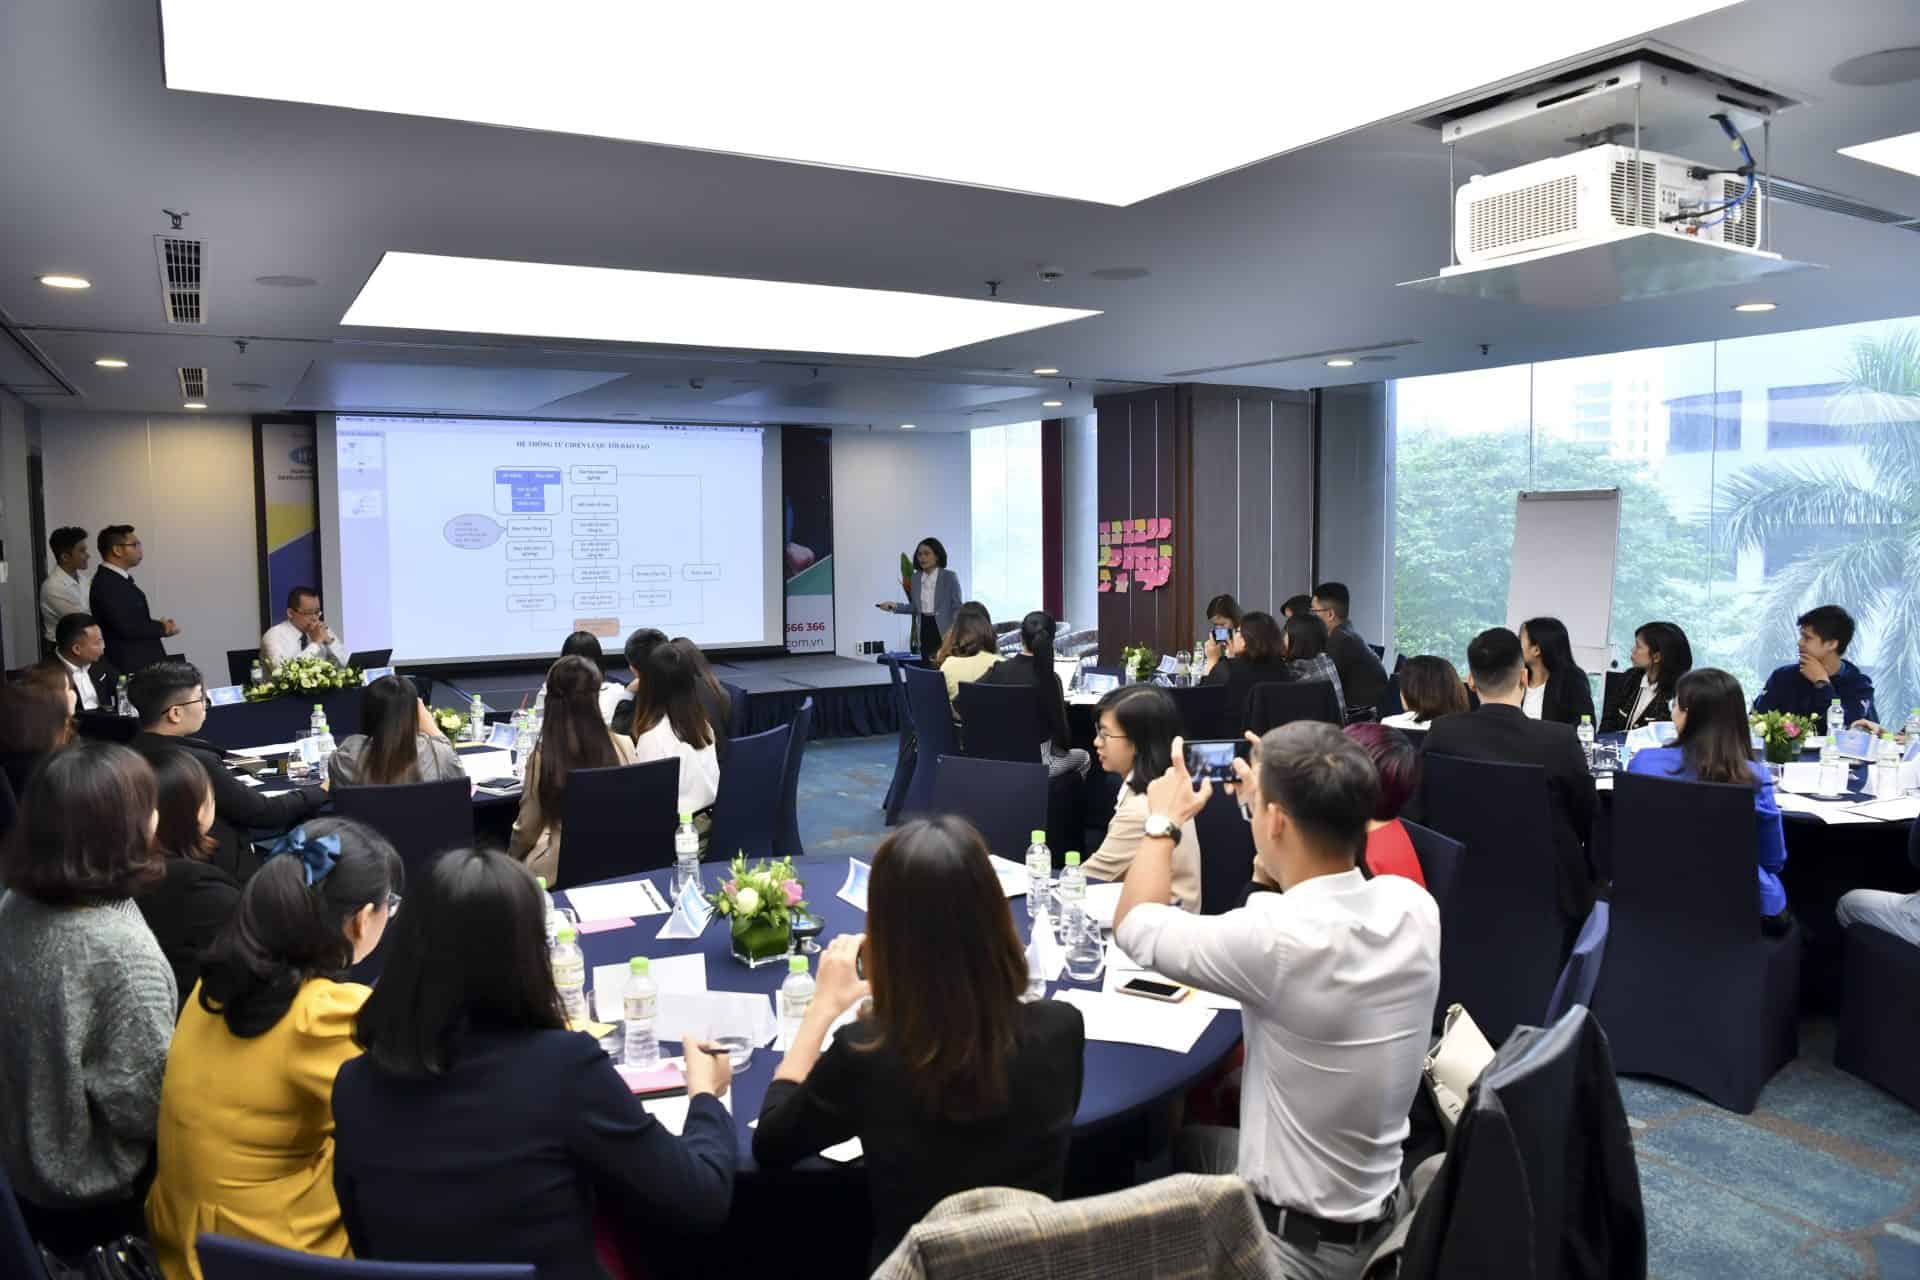 Workshop "Giải mã Kế hoạch đào tạo cùng HR & CEO" ngày 31.10.2020 tại Hà Nội